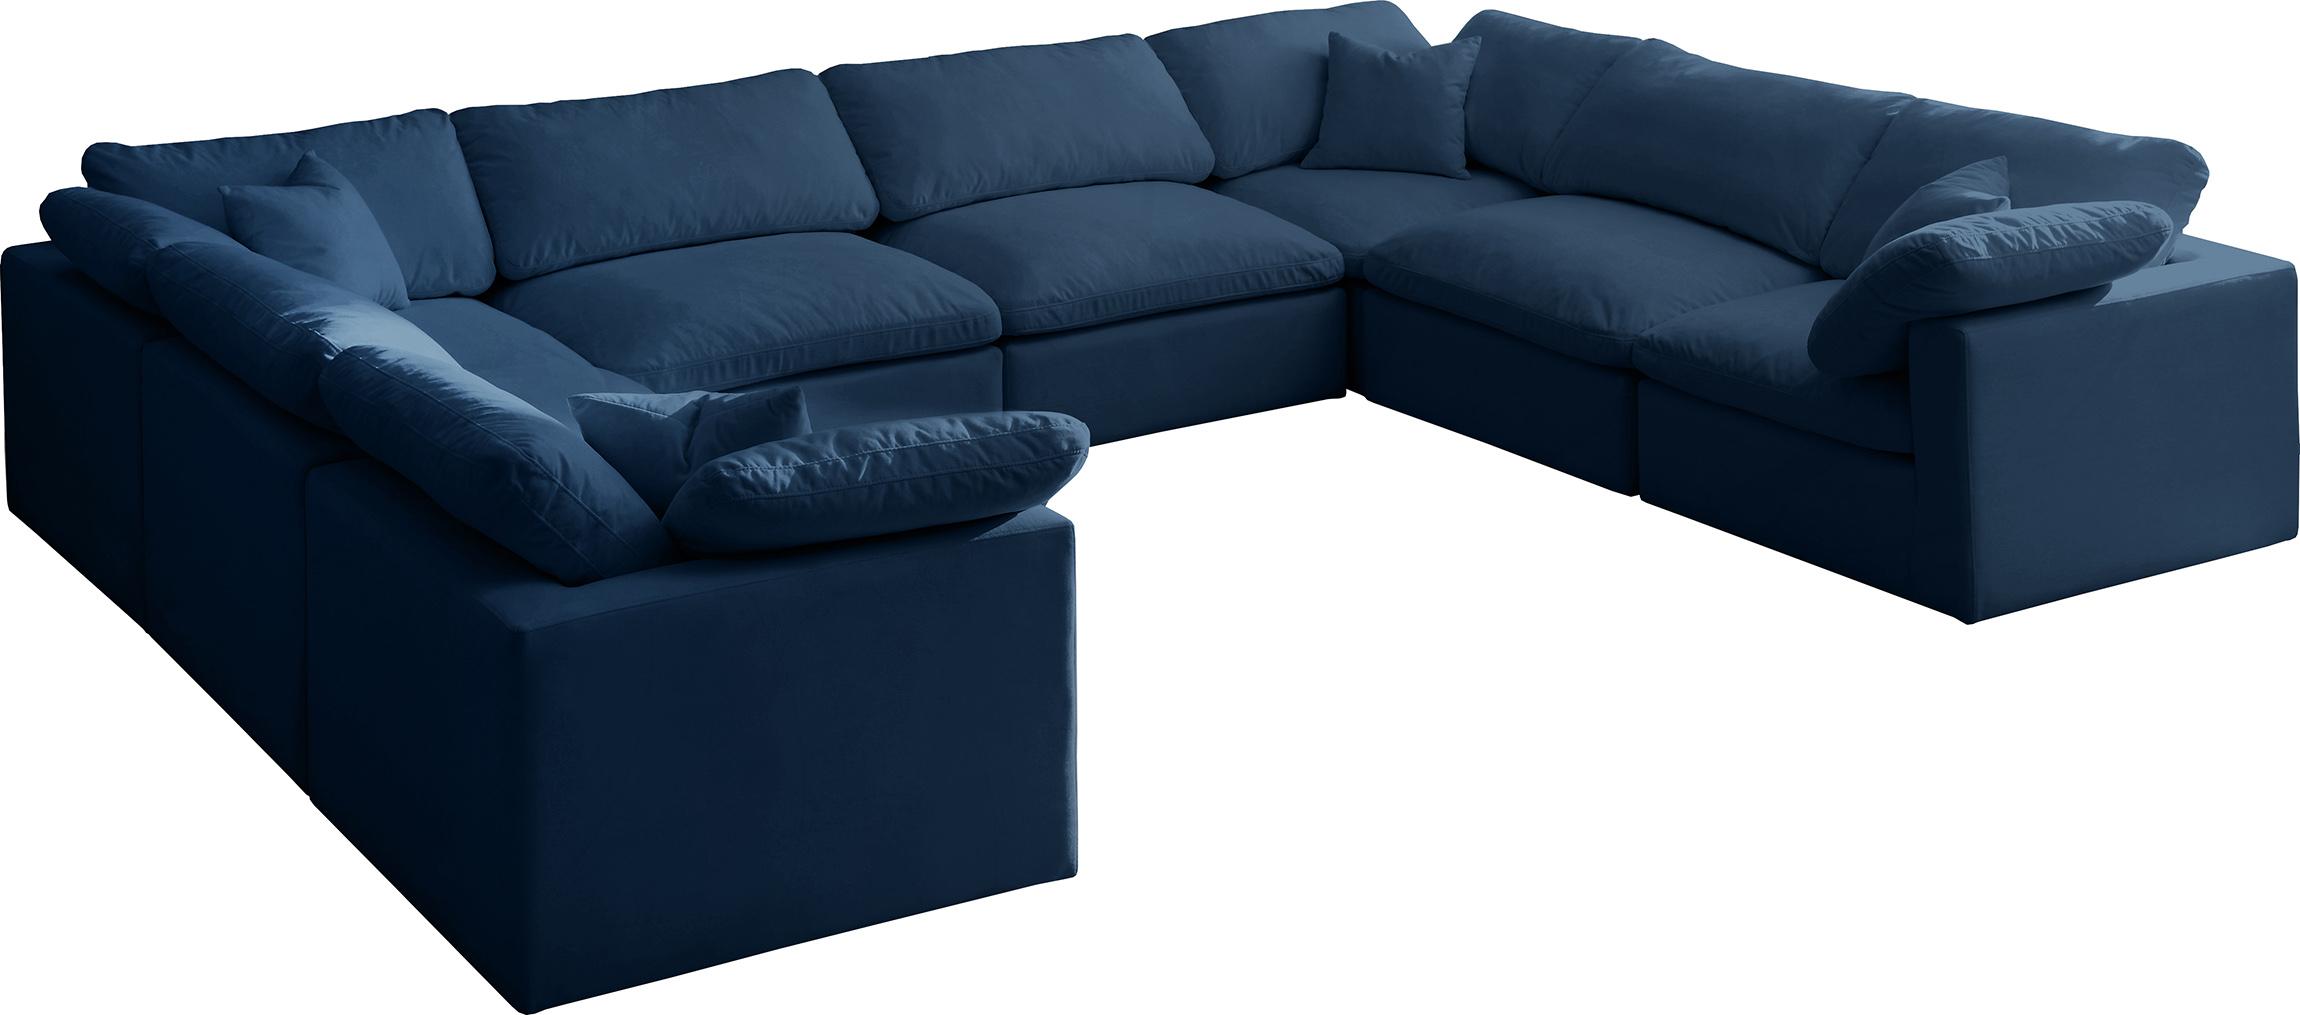 Soflex Cloud NAVY Modular Sectional Sofa